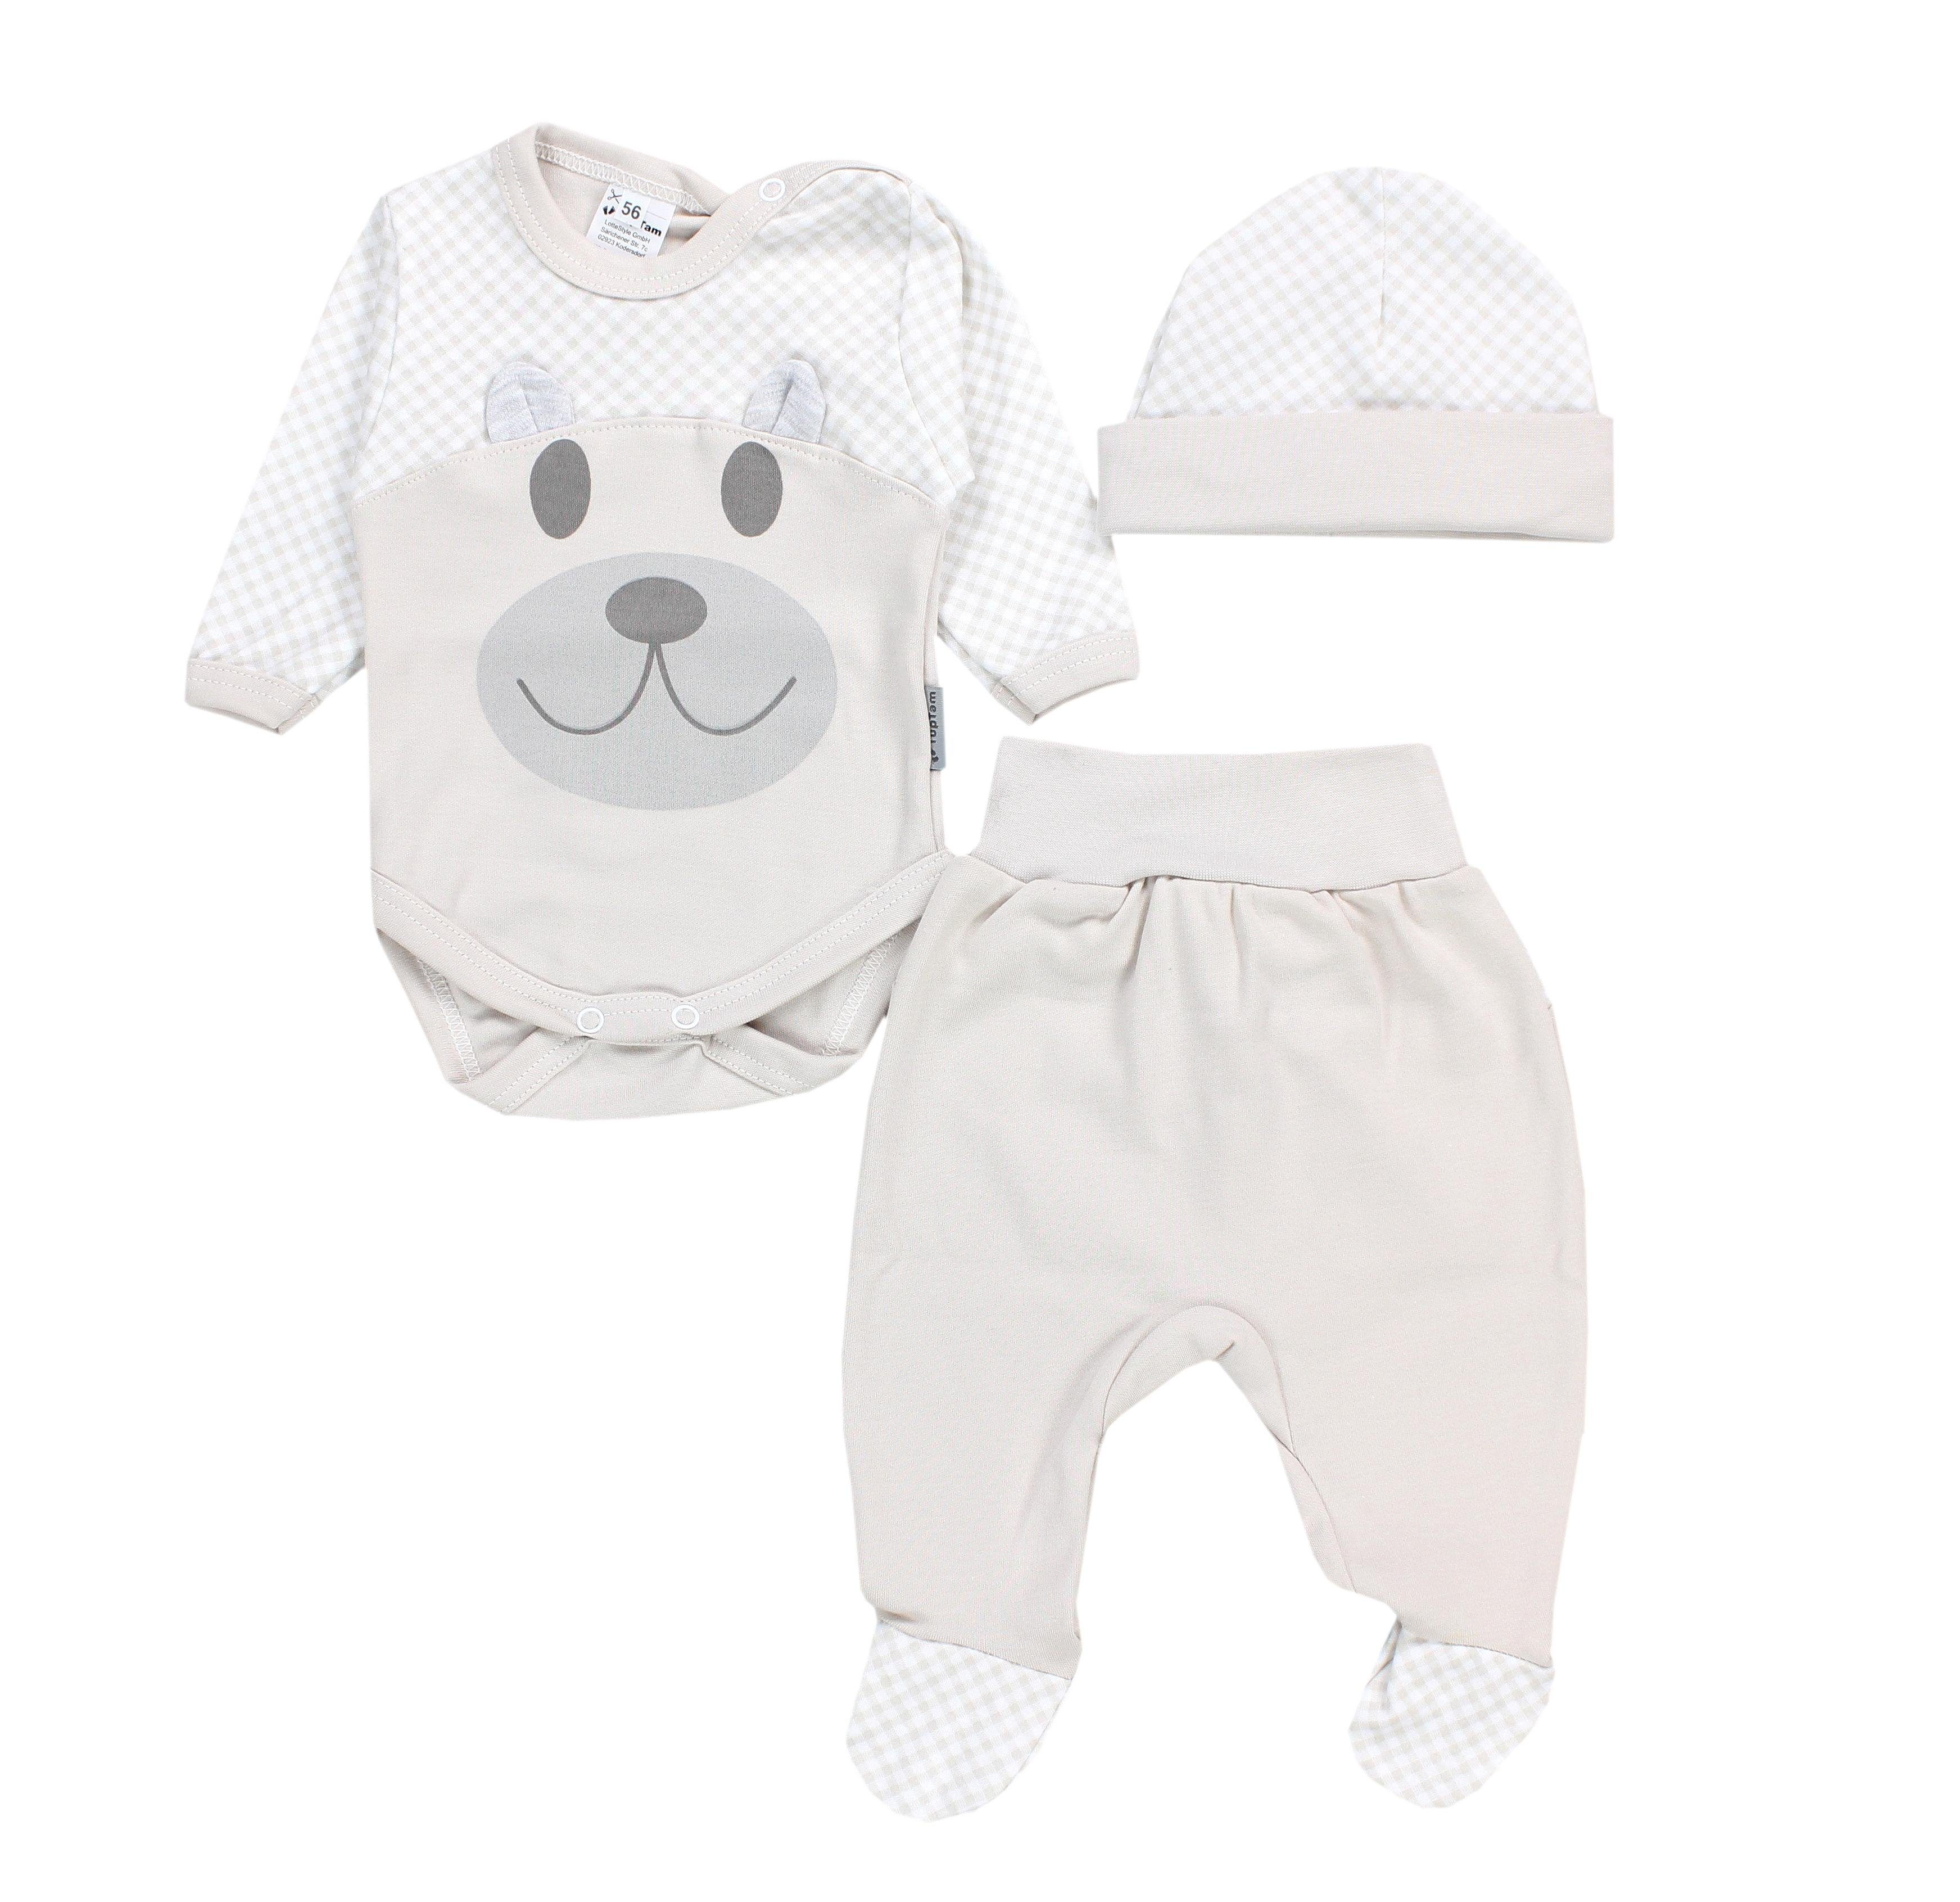 Baby Strampelhose TupTam Bekleidungsset / Erstausstattungspaket Set Mütze Bär Kleidung Beige Body